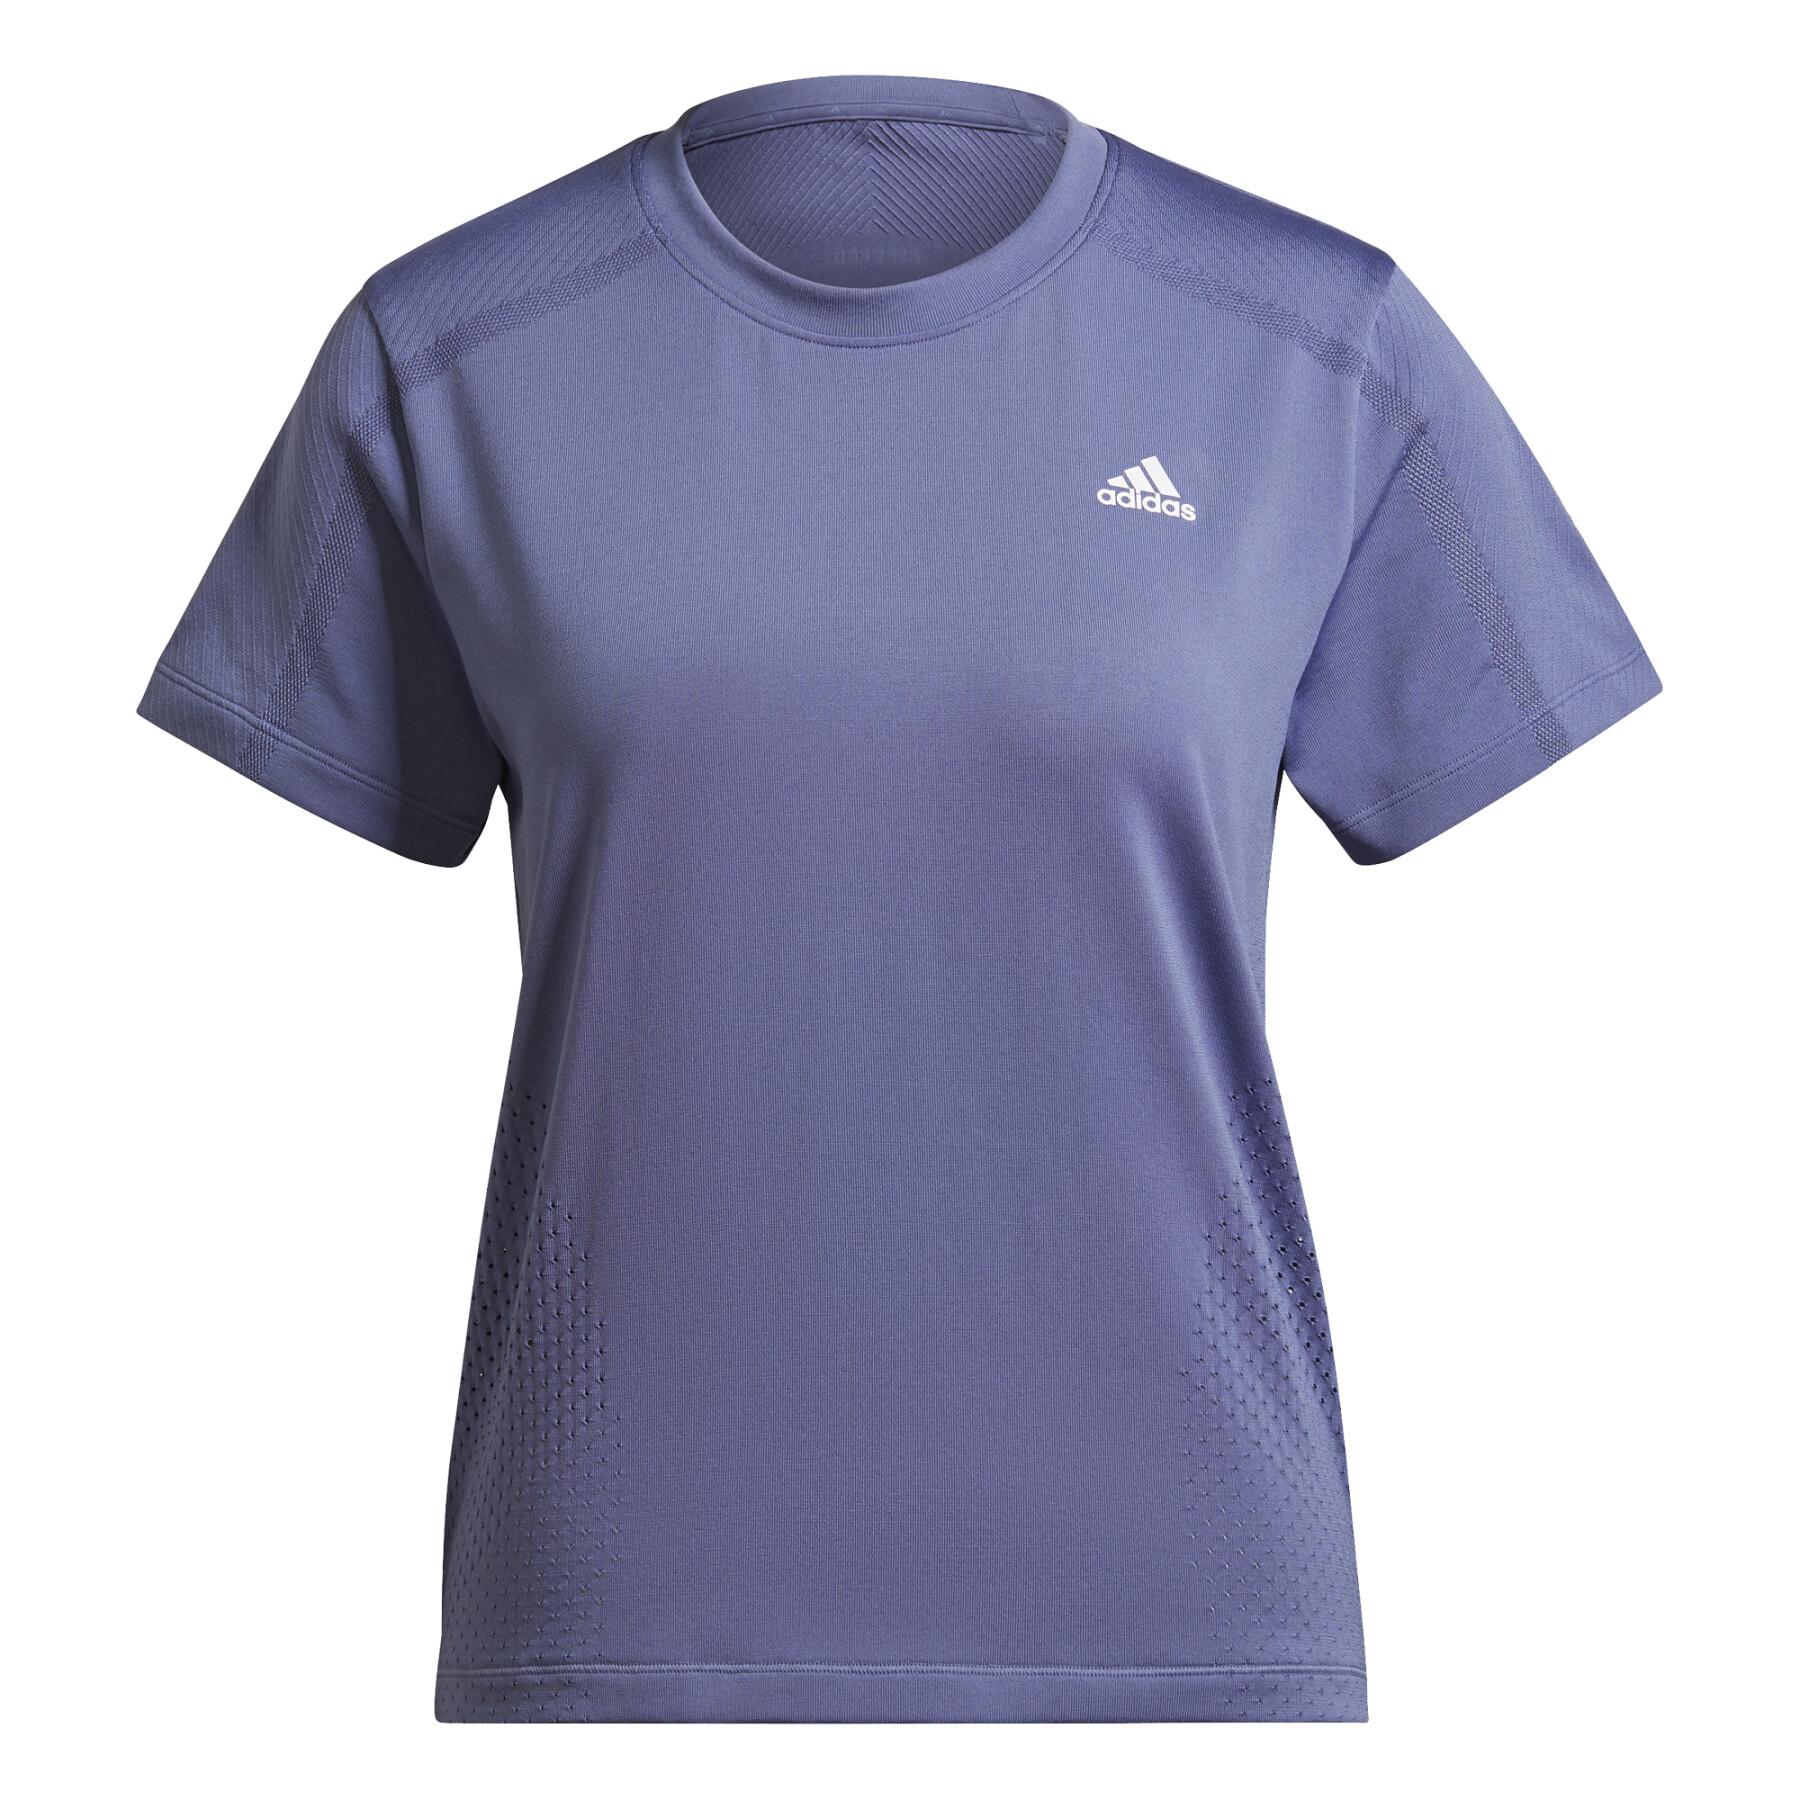 T-shirt för kvinnor adidas Aeroknit Designed 2 Move Seamless